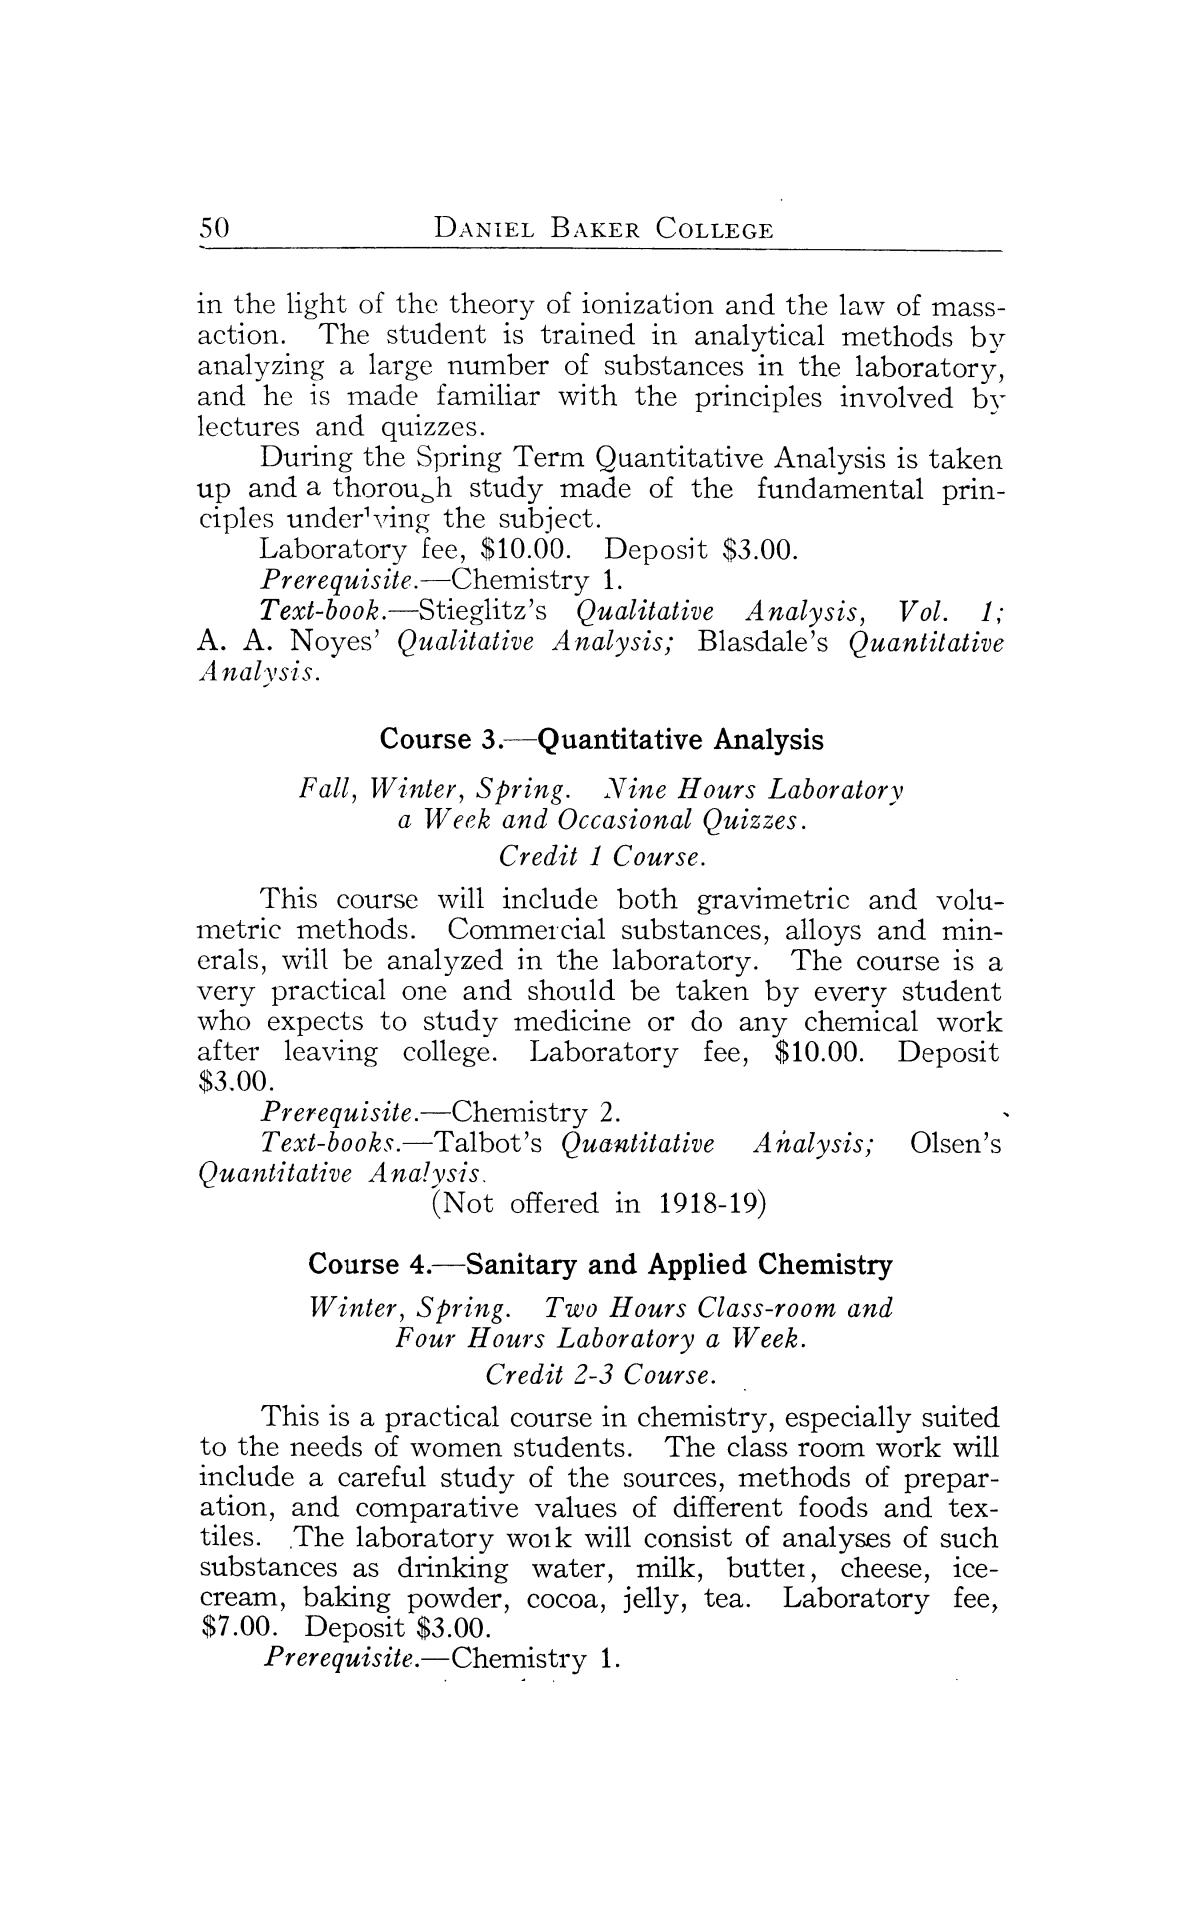 Catalog of Daniel Baker College, 1917-1918
                                                
                                                    50
                                                